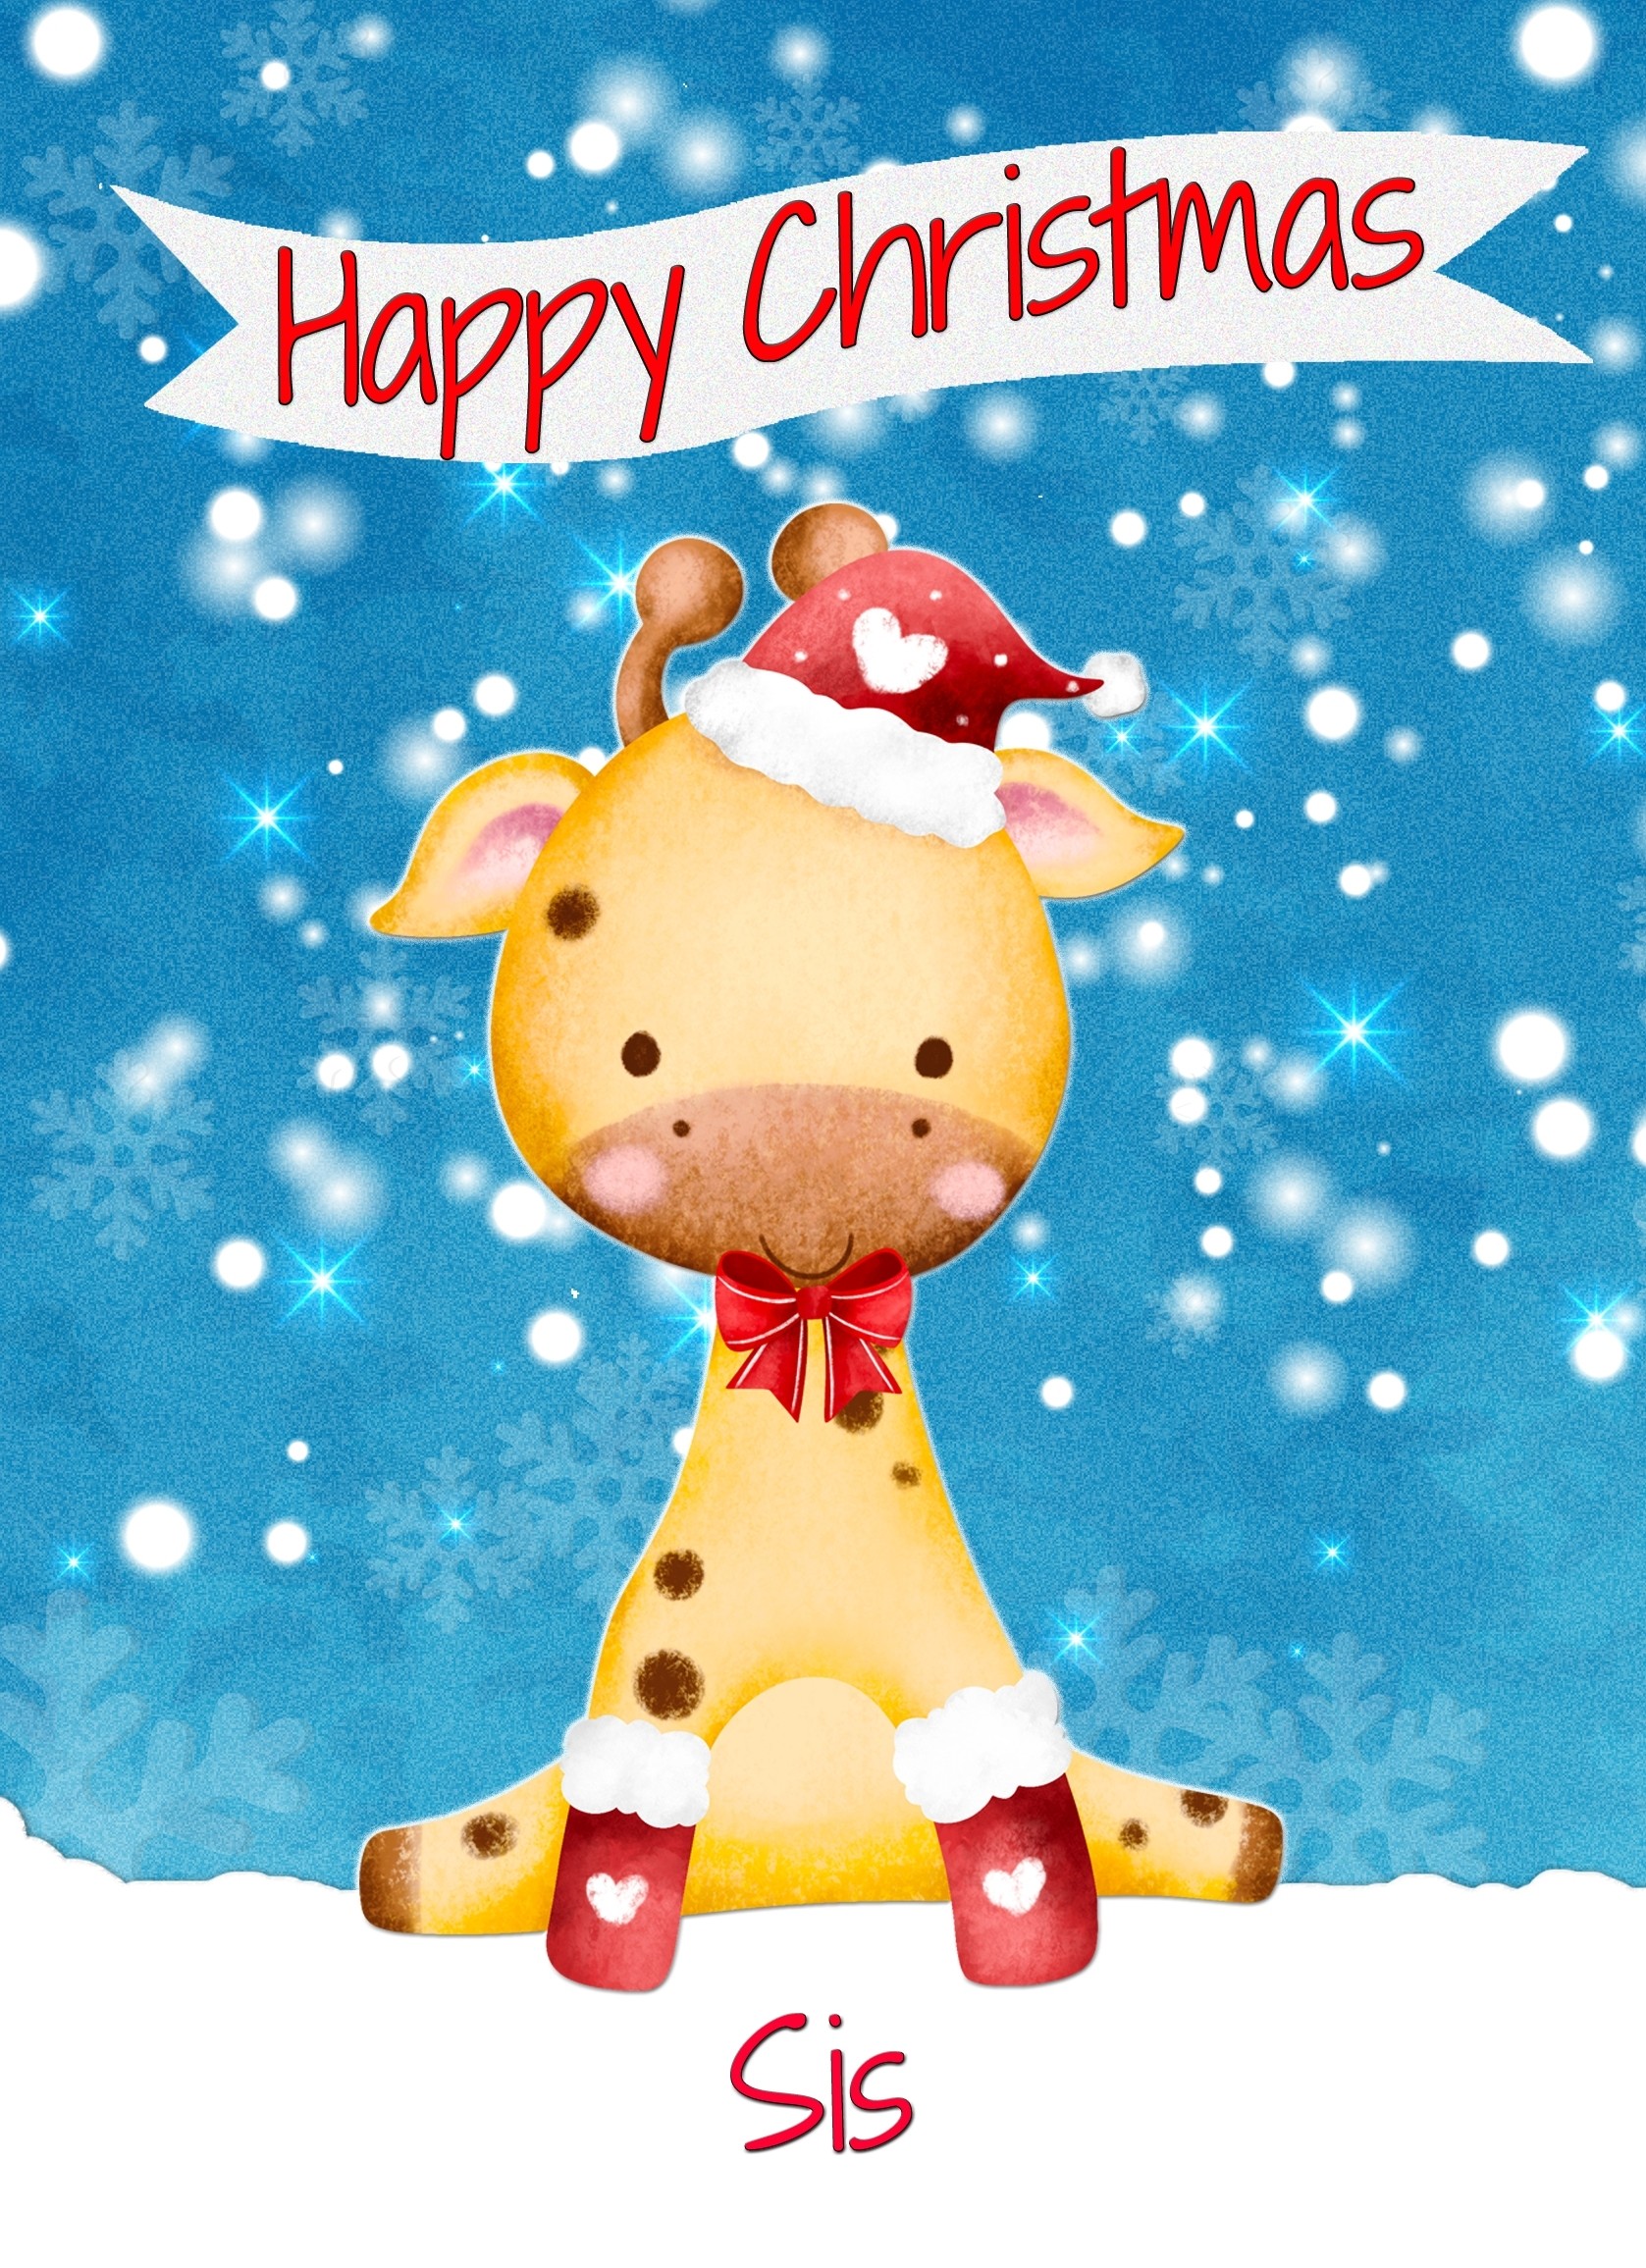 Christmas Card For Sis (Happy Christmas, Giraffe)